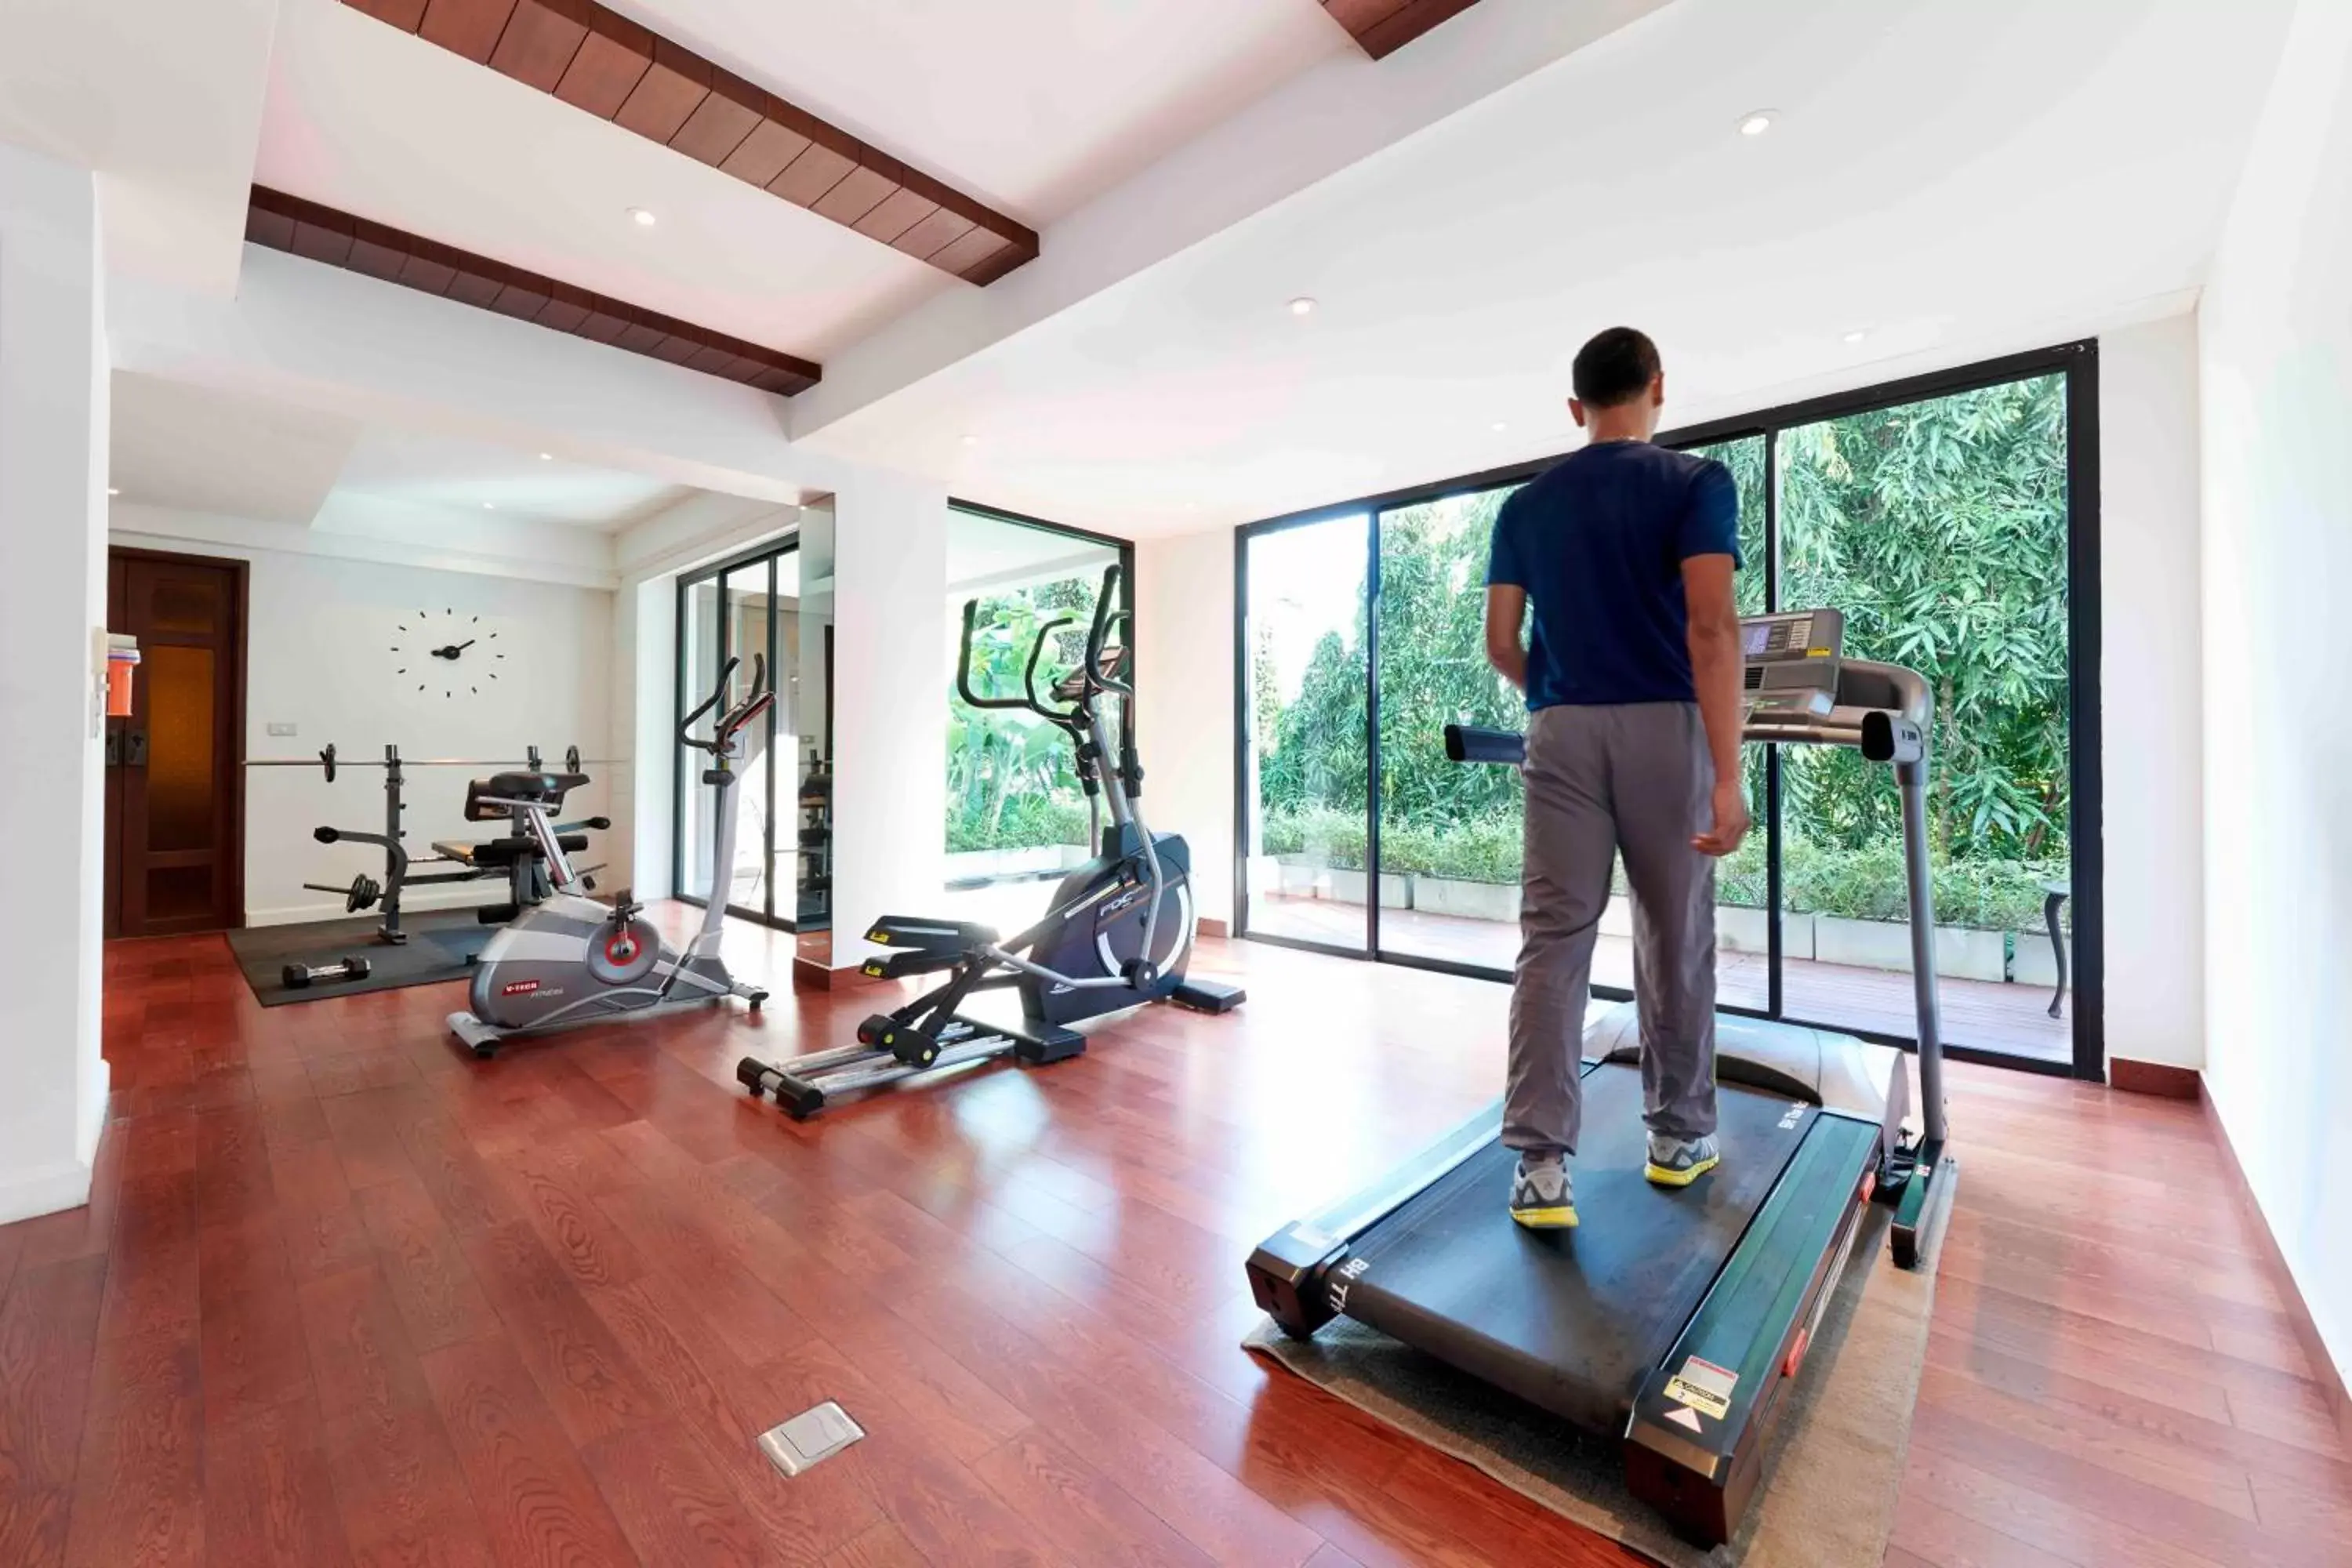 Fitness centre/facilities, Fitness Center/Facilities in Loligo Resort Hua Hin